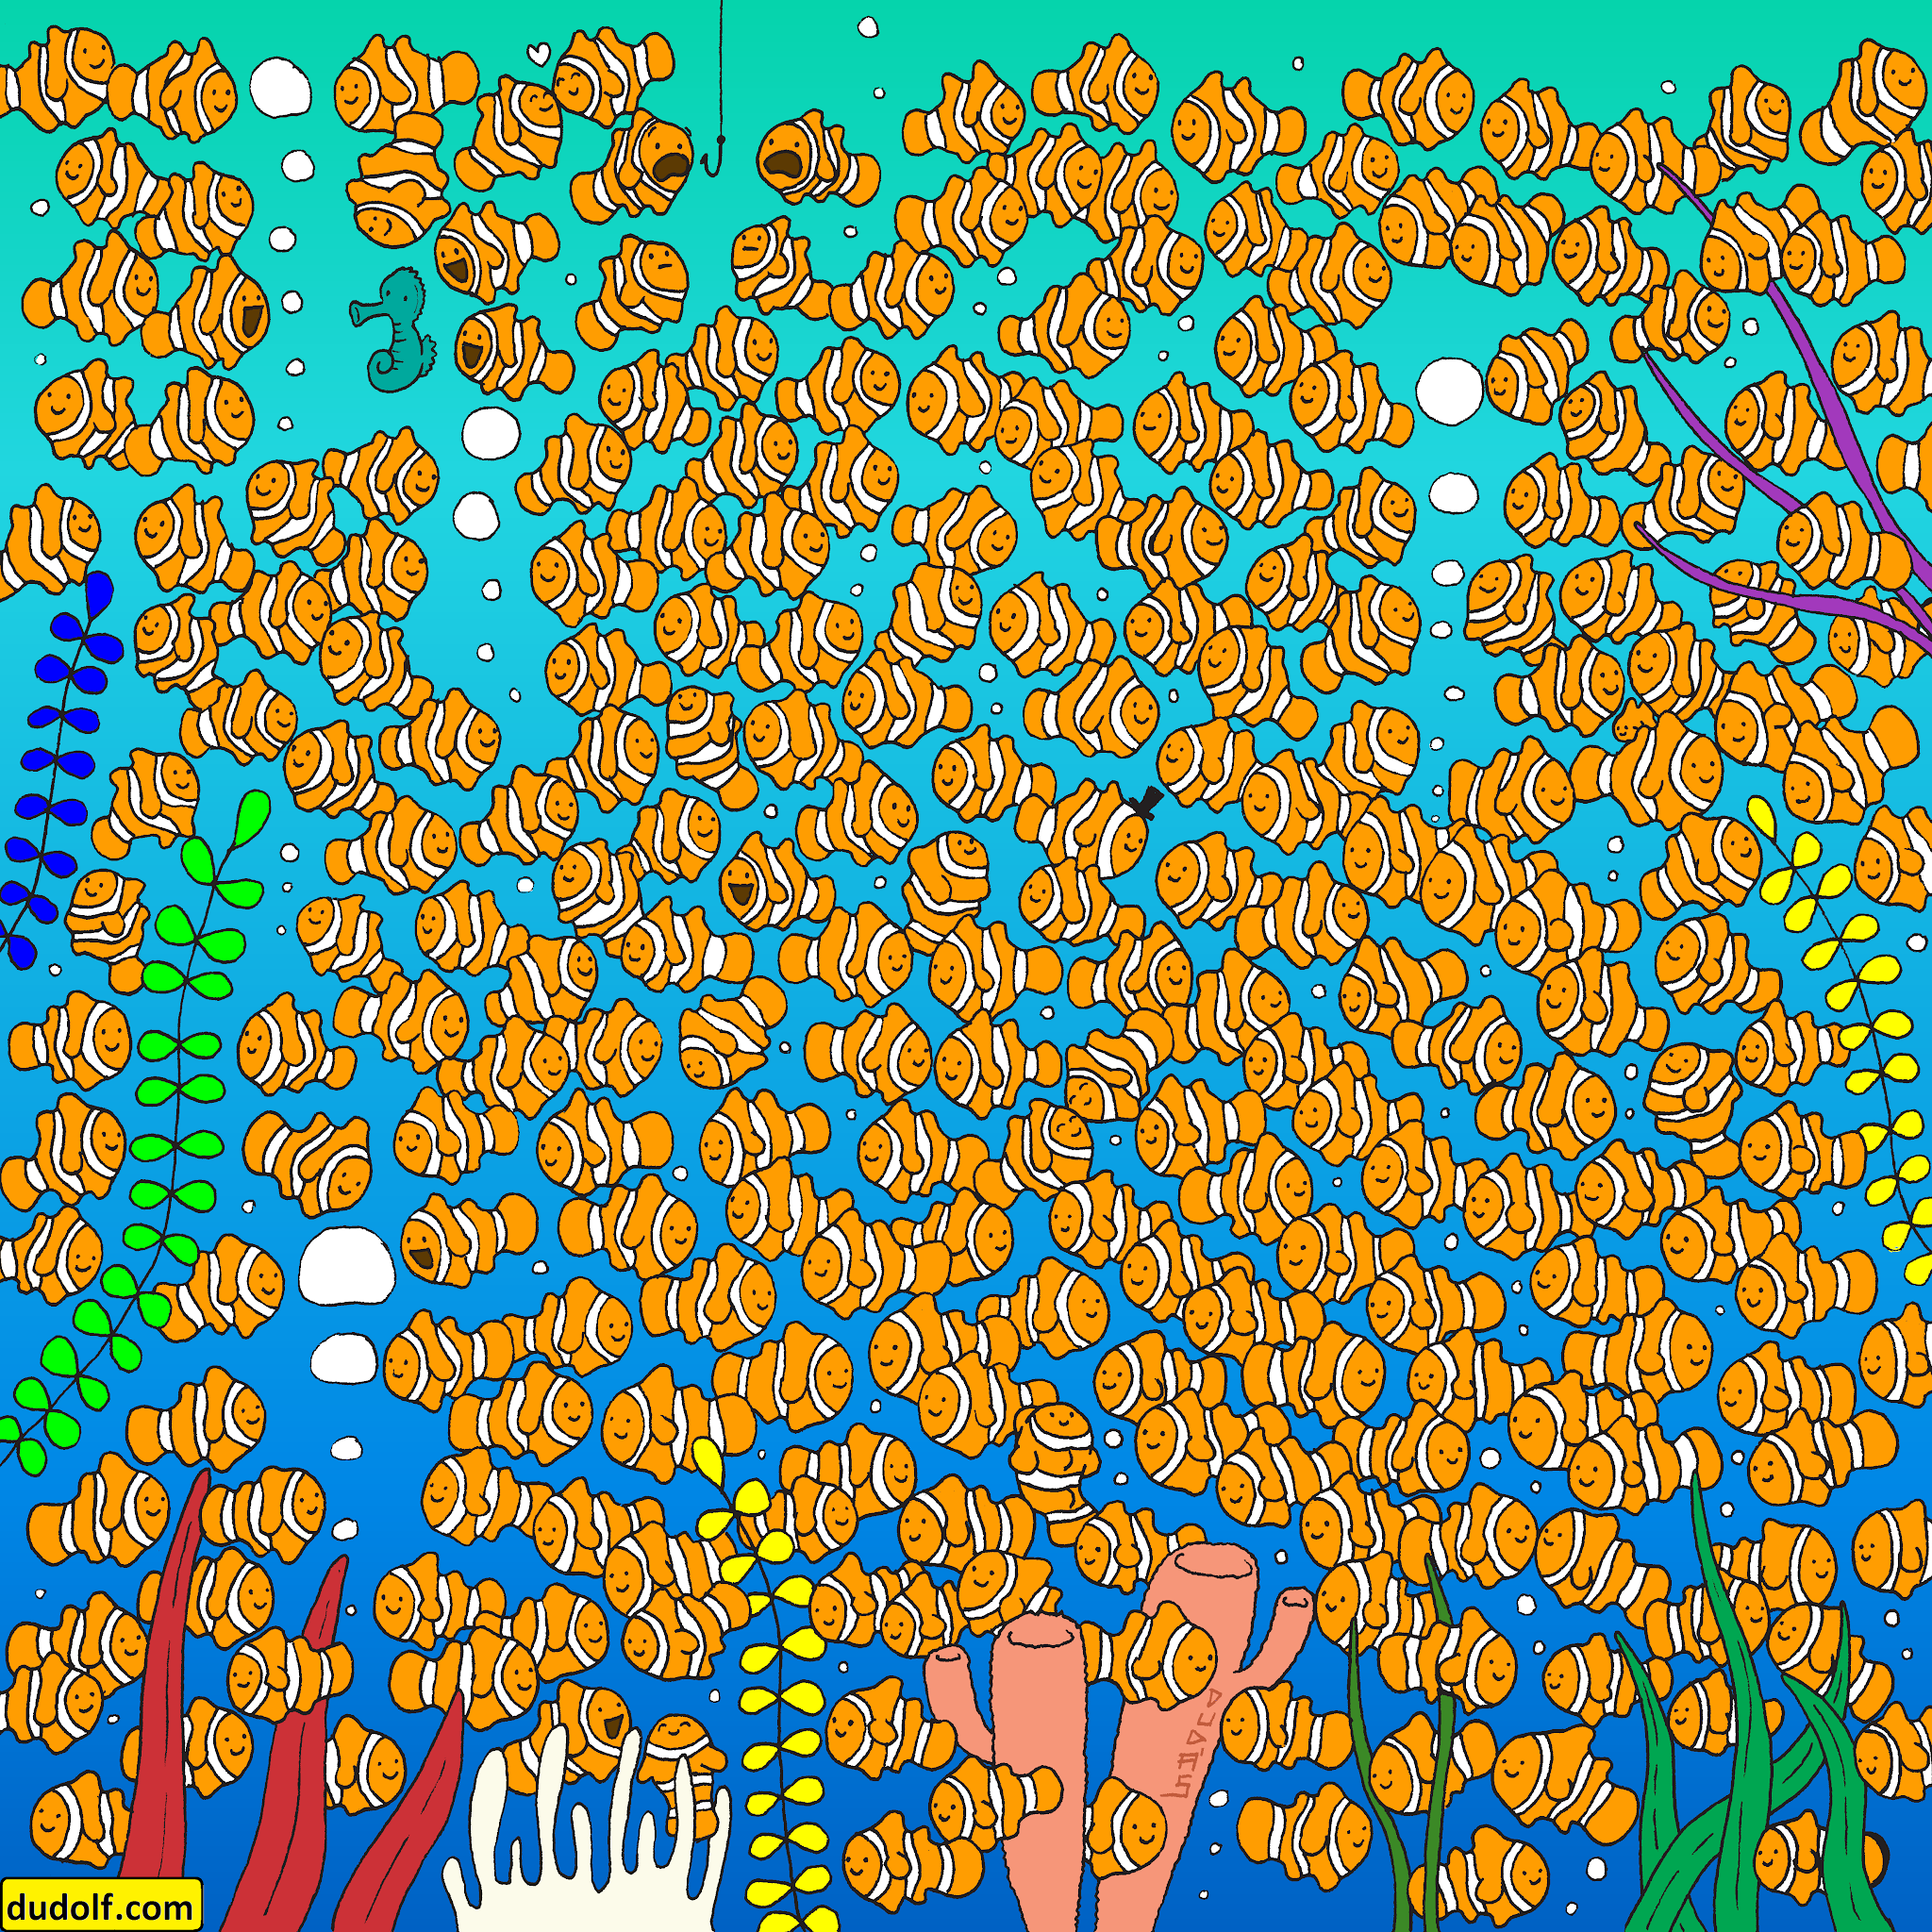  RETO VISUAL: ¿Puedes encontrar al pequeño pez dorado entre los peces payaso?